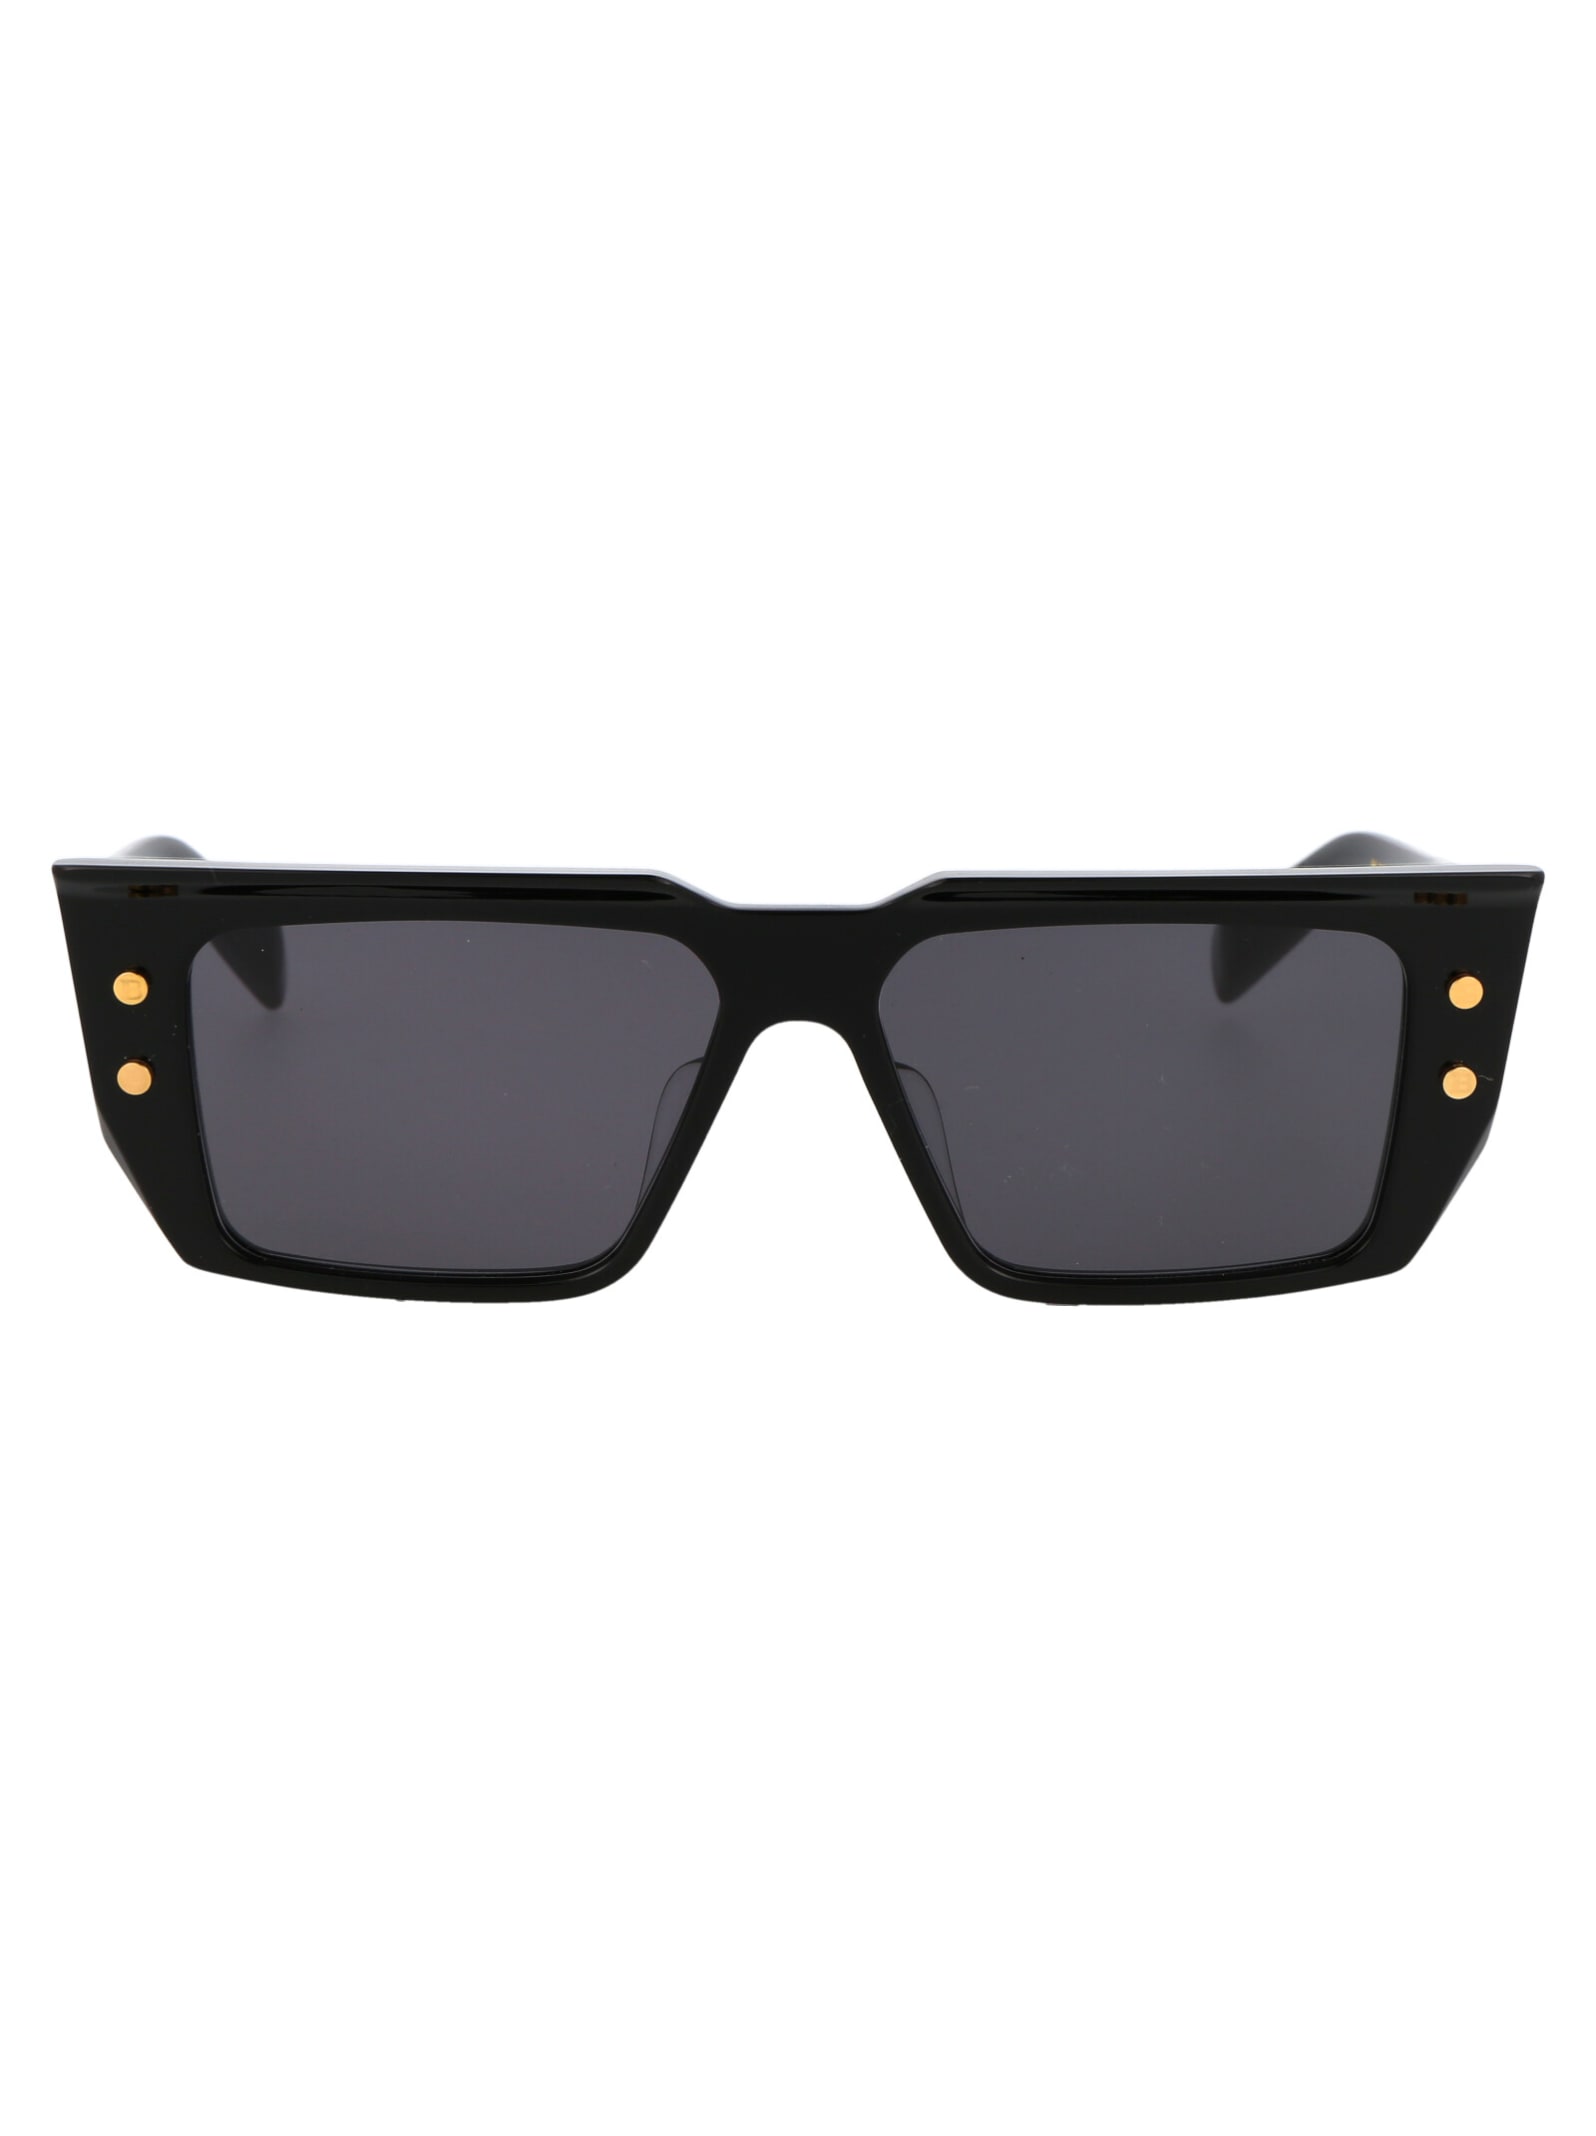 Balmain B - Vi Sunglasses